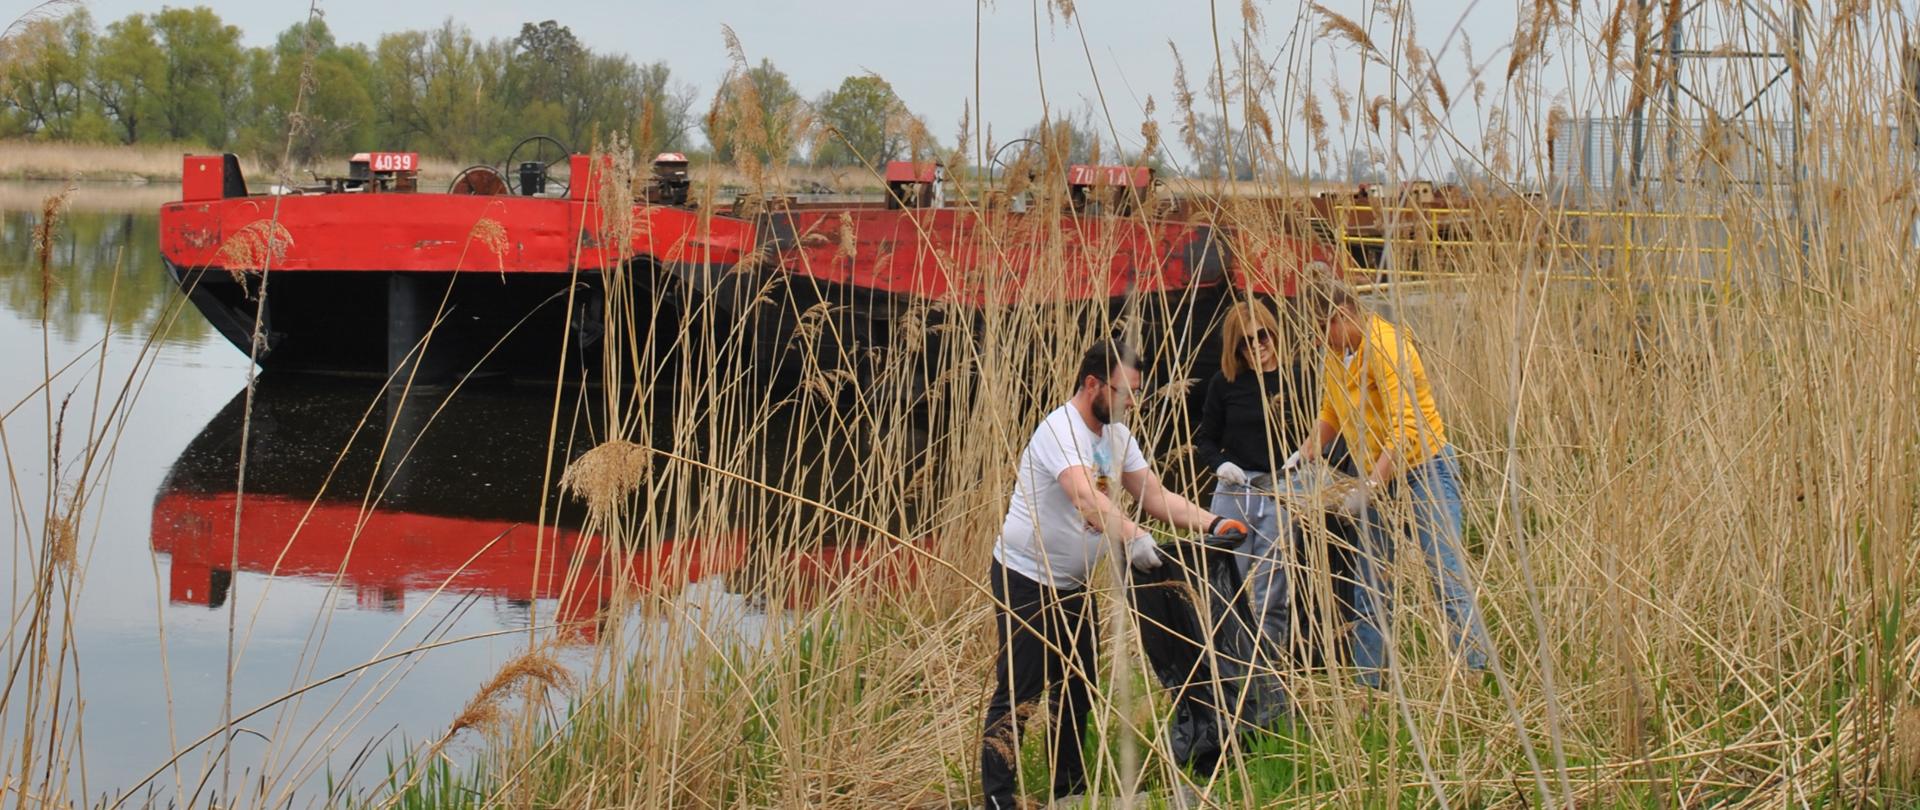 Sprzątanie brzegu rzeki Odra. Troje ludzi zbiera śmieci w tle na nabrzeżu stoi przycumowana czarno czerwona barka.